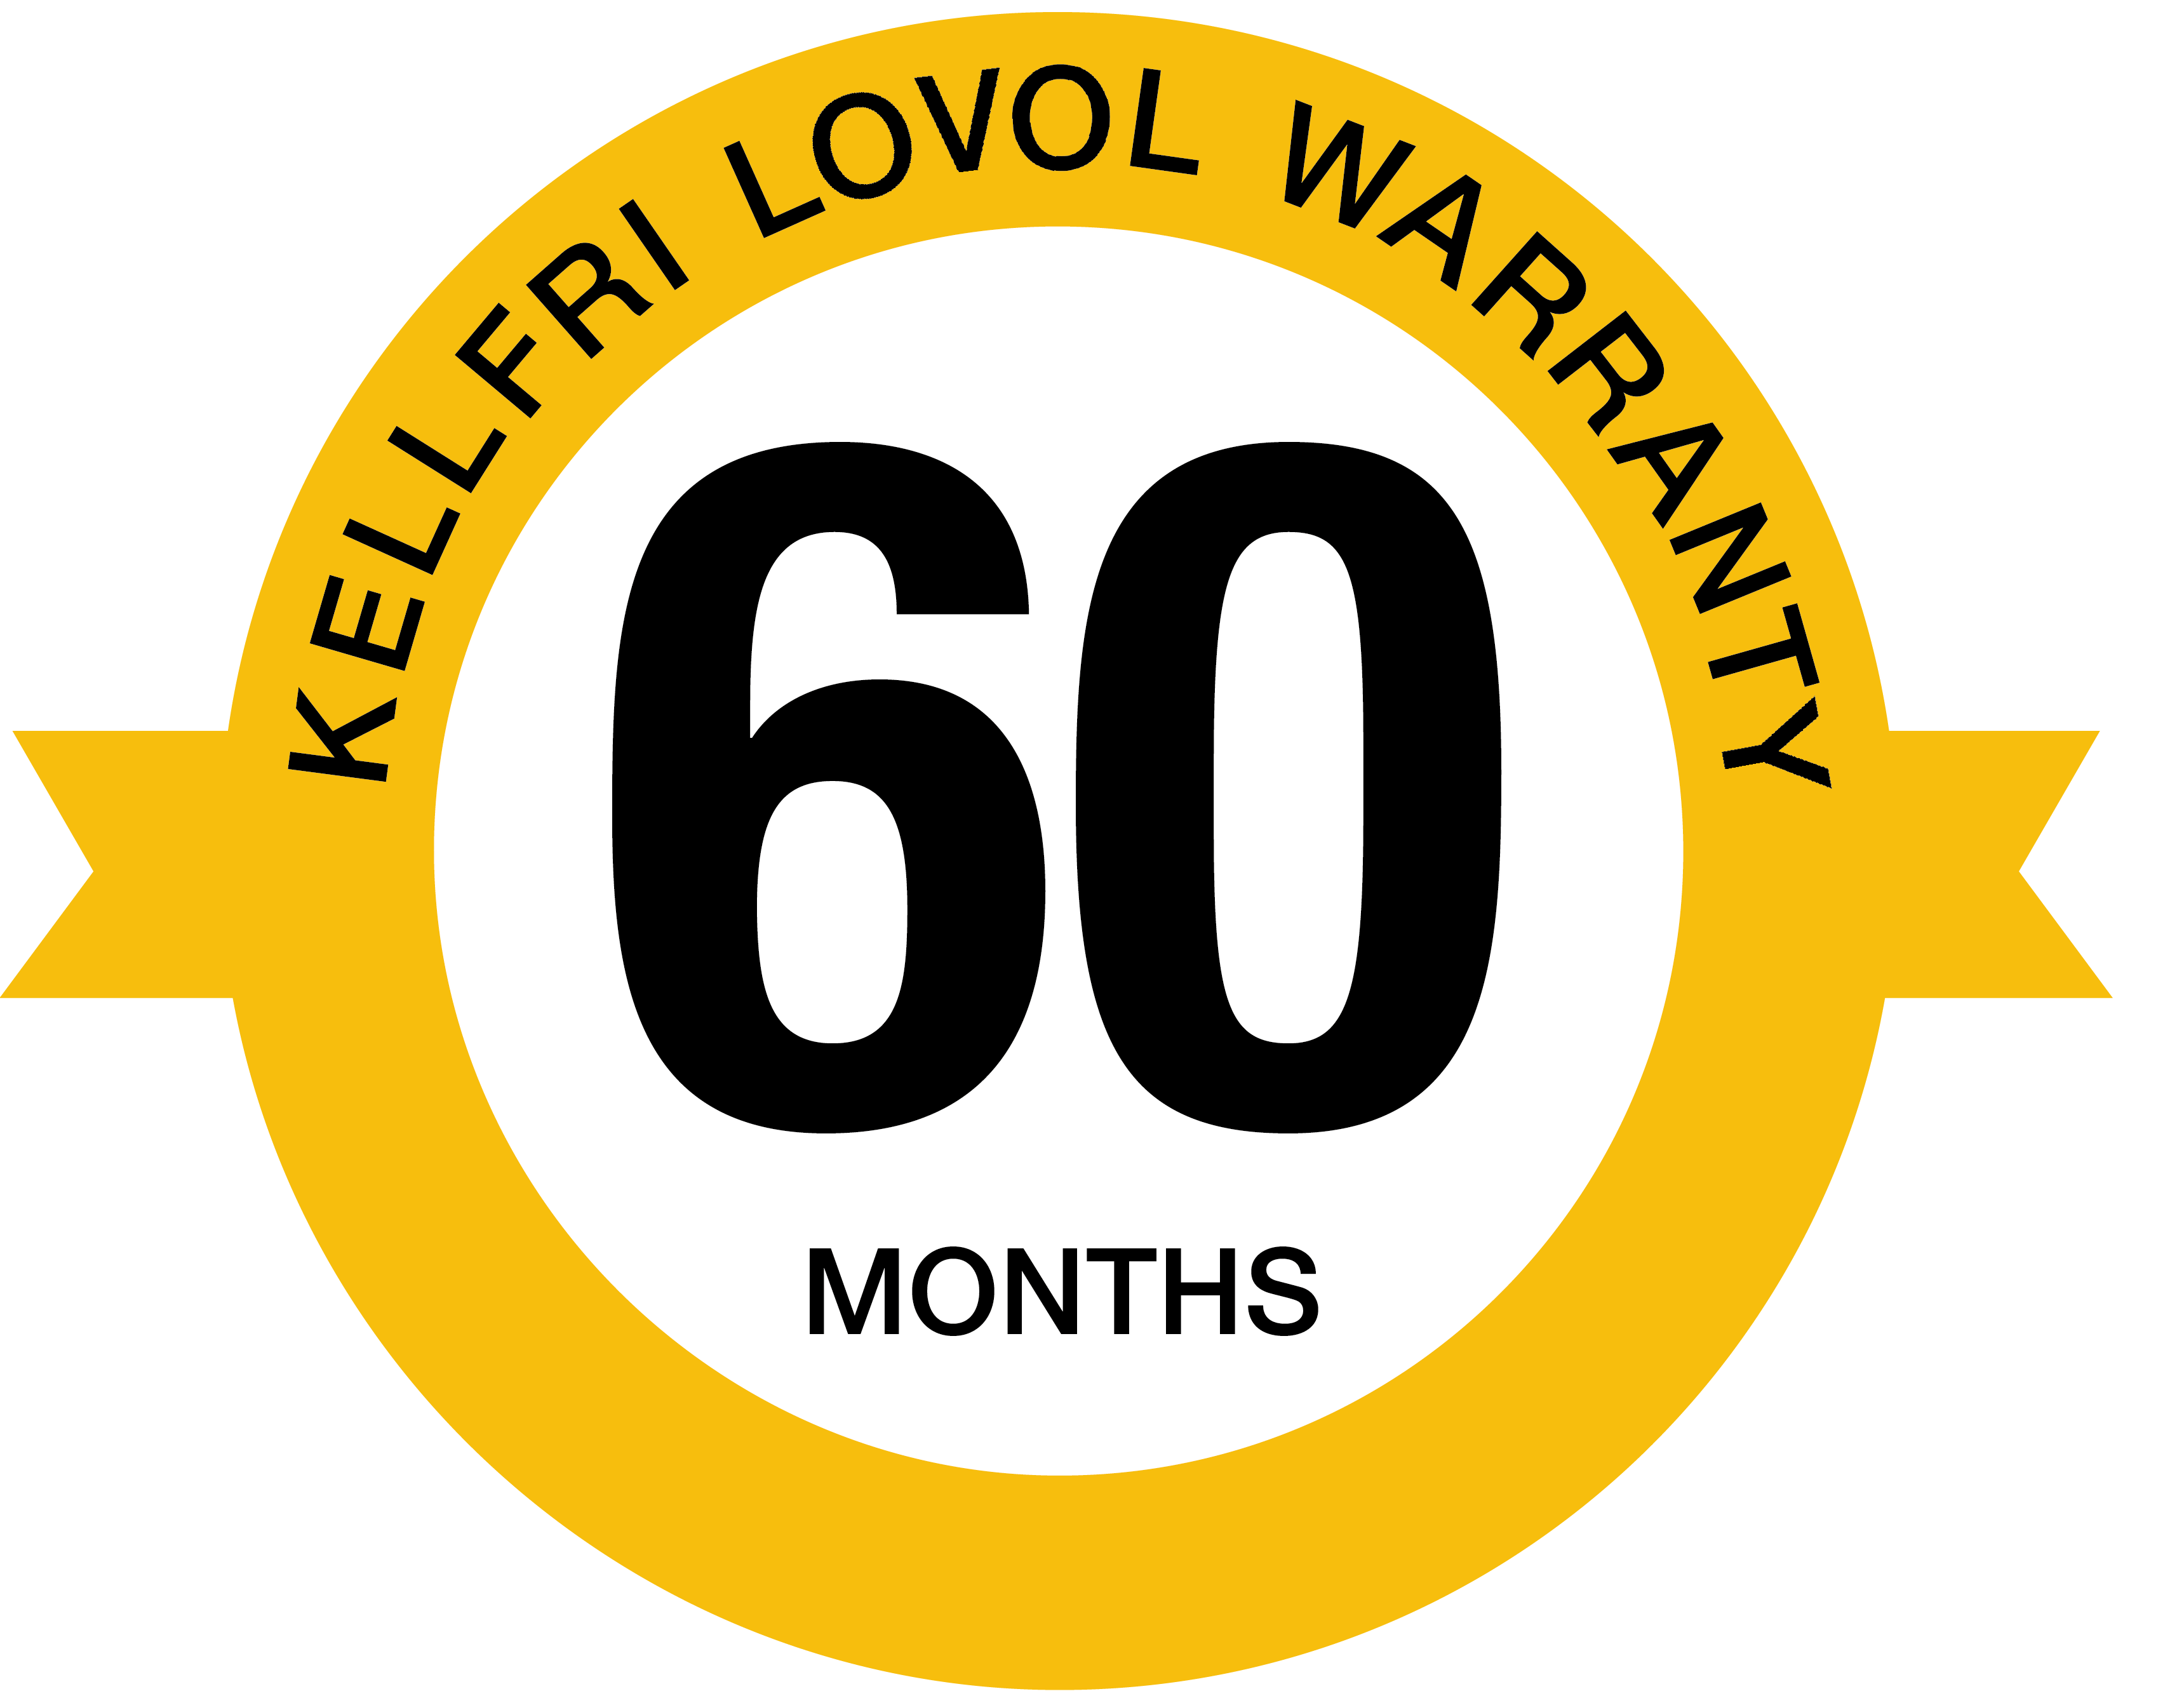 kellfri LOVOL warranty logo 60 months.png